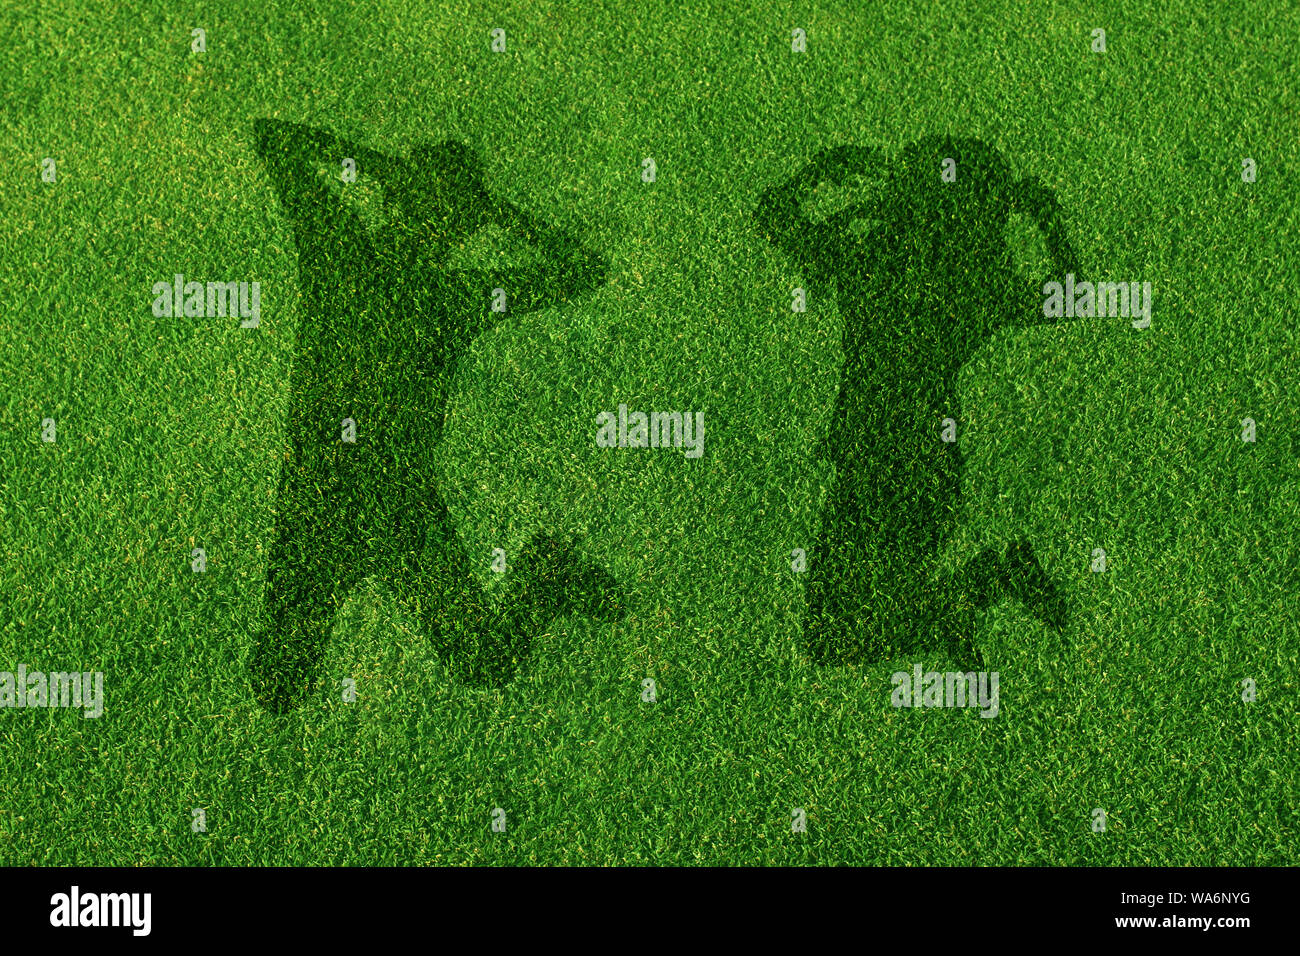 Ombra di una coppia in erba che salta in aria Foto Stock